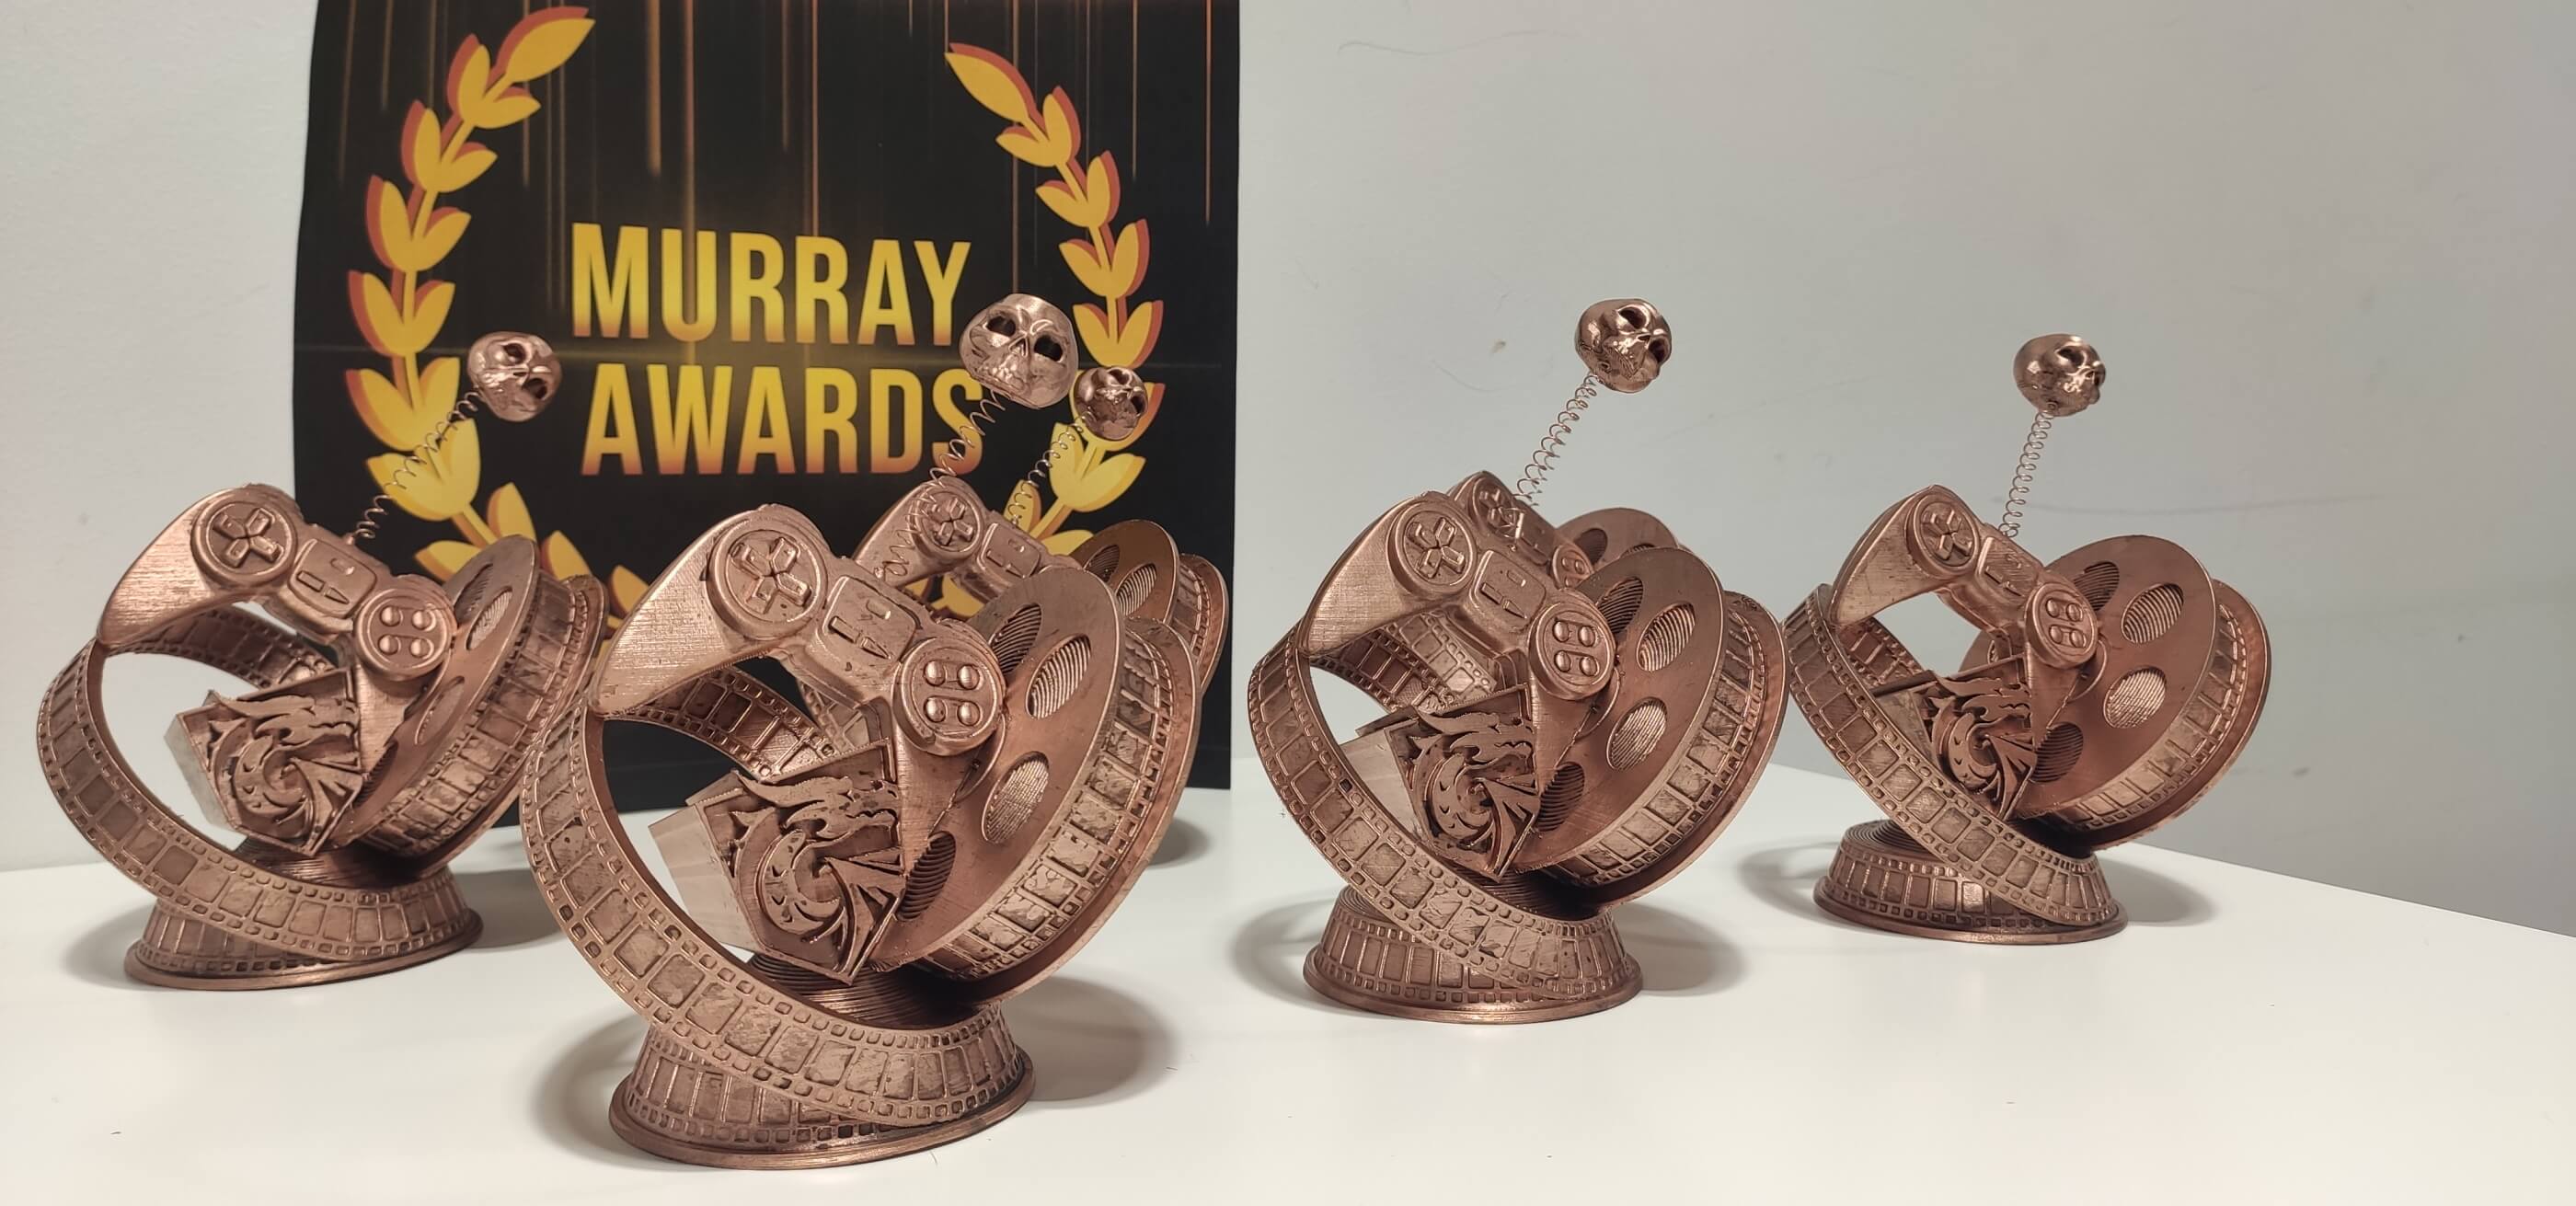 Cinco Murray Awards posados delante del logotipo oficial de los Murray Awards